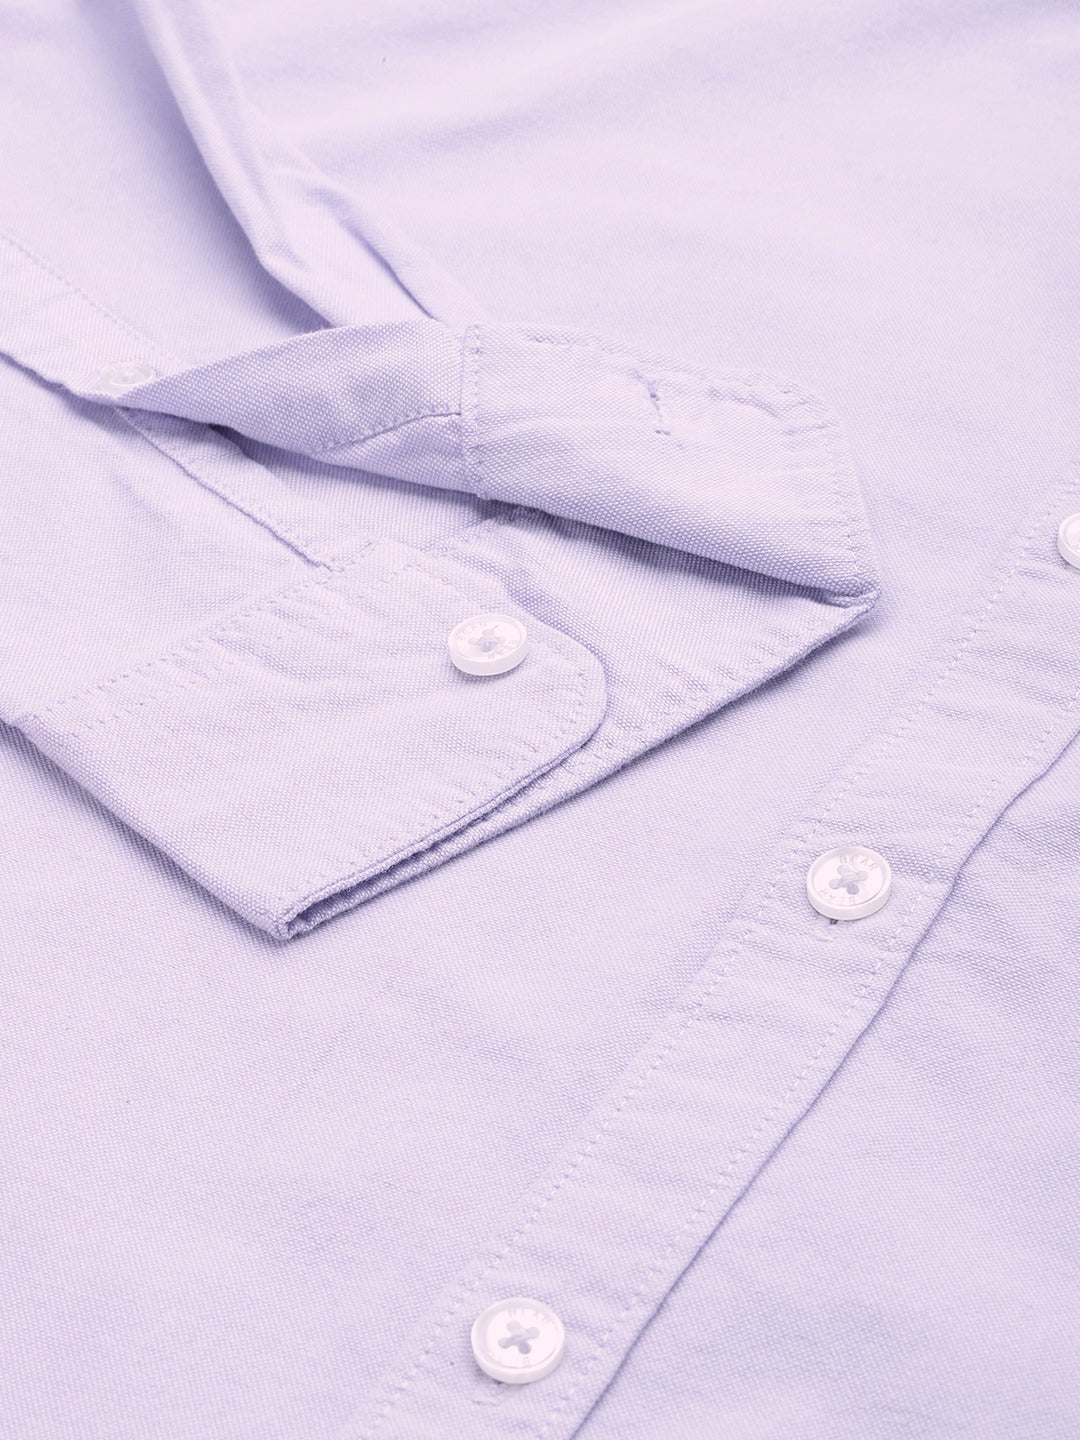 DESCAT Men's Pure Cotton Solid Slim Fit Casual Shirt